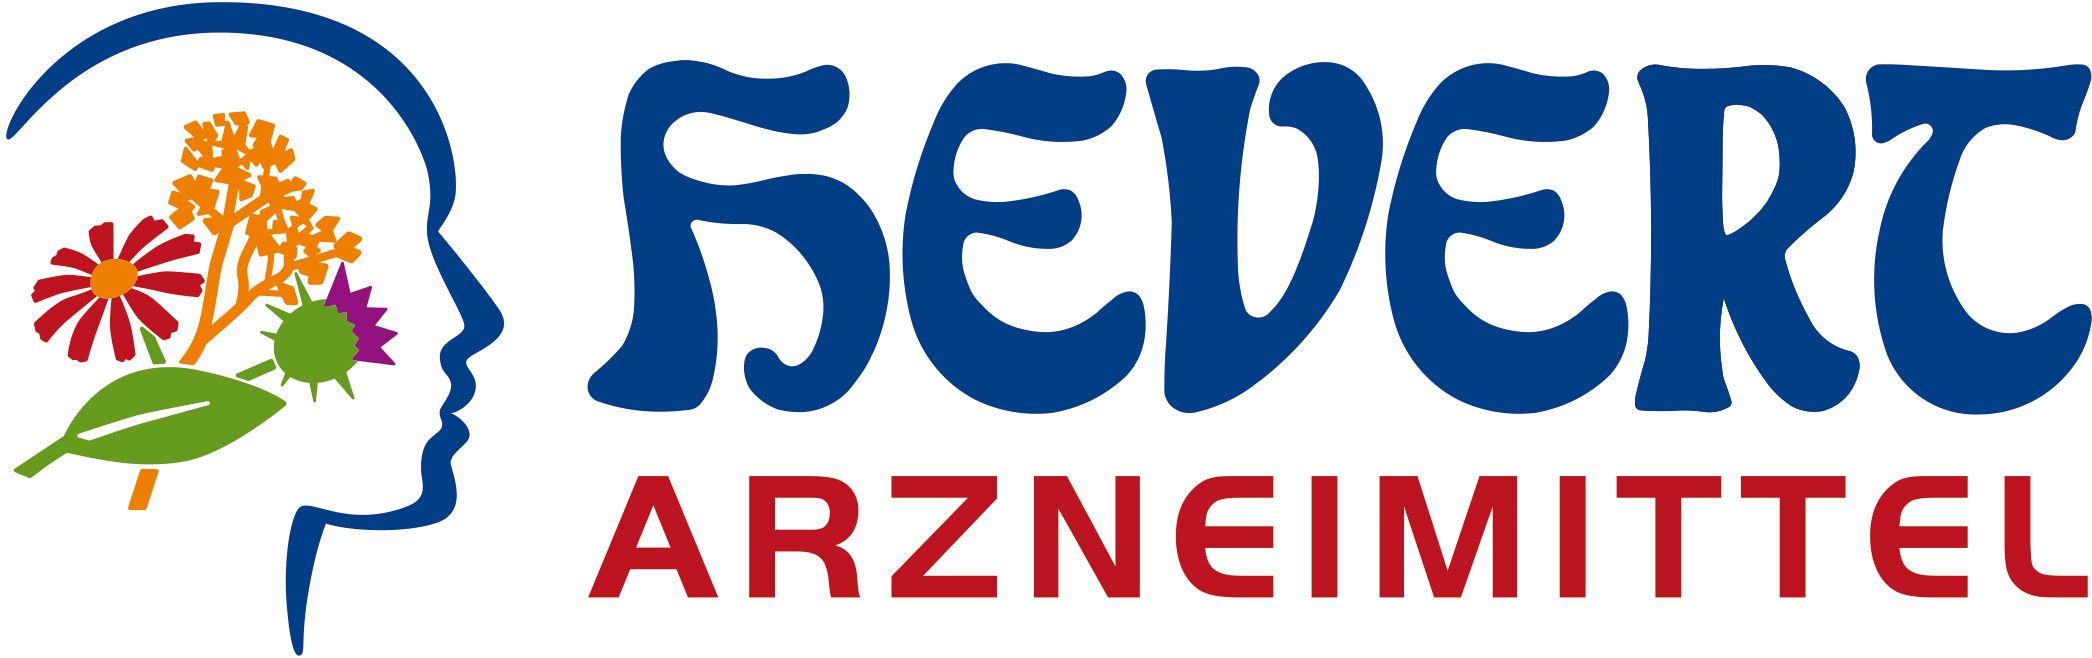 Hevert_Logo_Banner.jpg